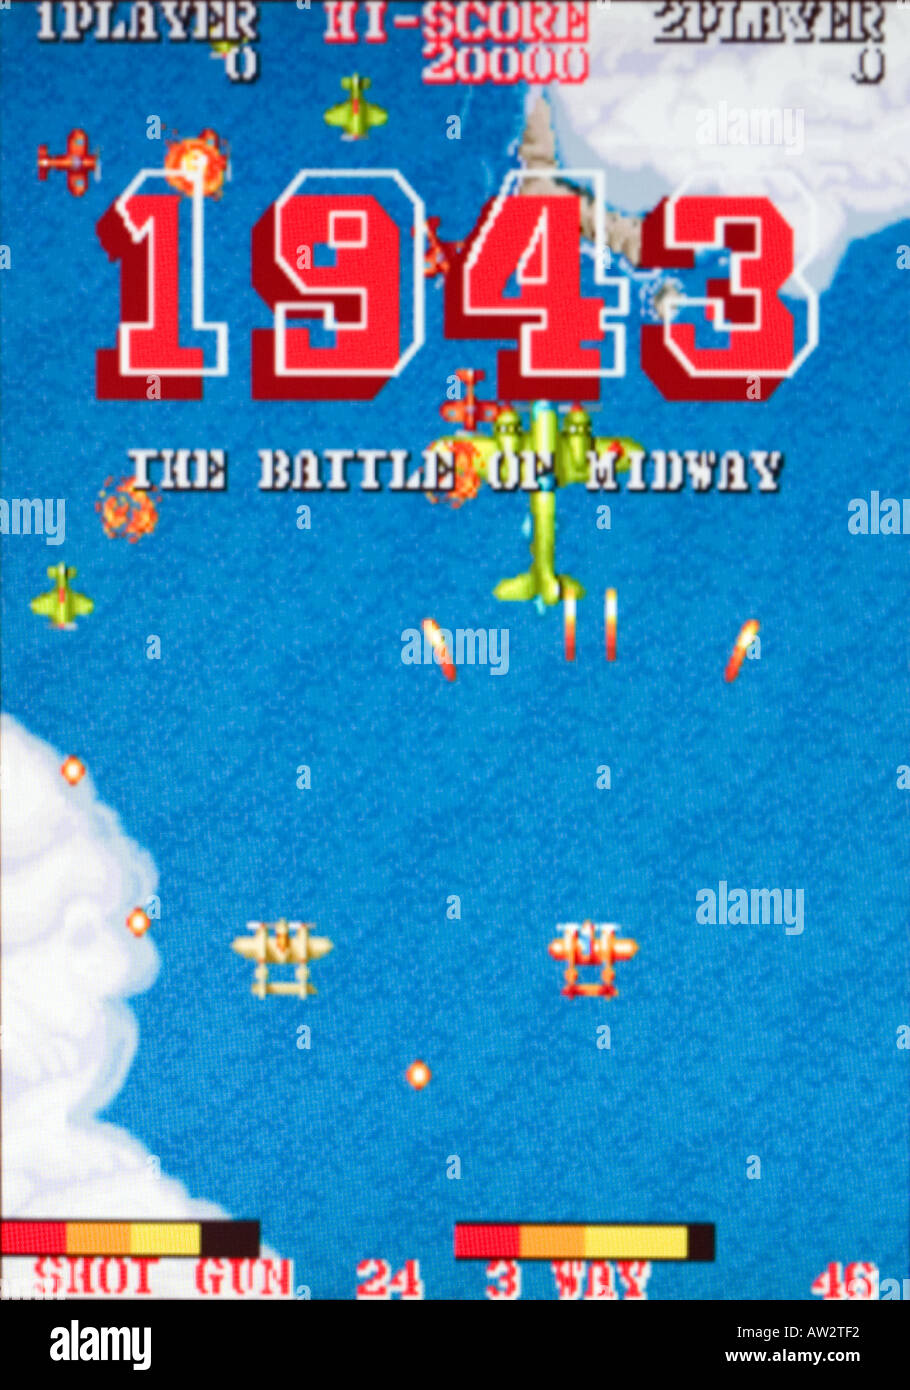 1943 La Battaglia di Midway Capcom Vintage videogioco arcade di screen shot - solo uso editoriale Foto Stock